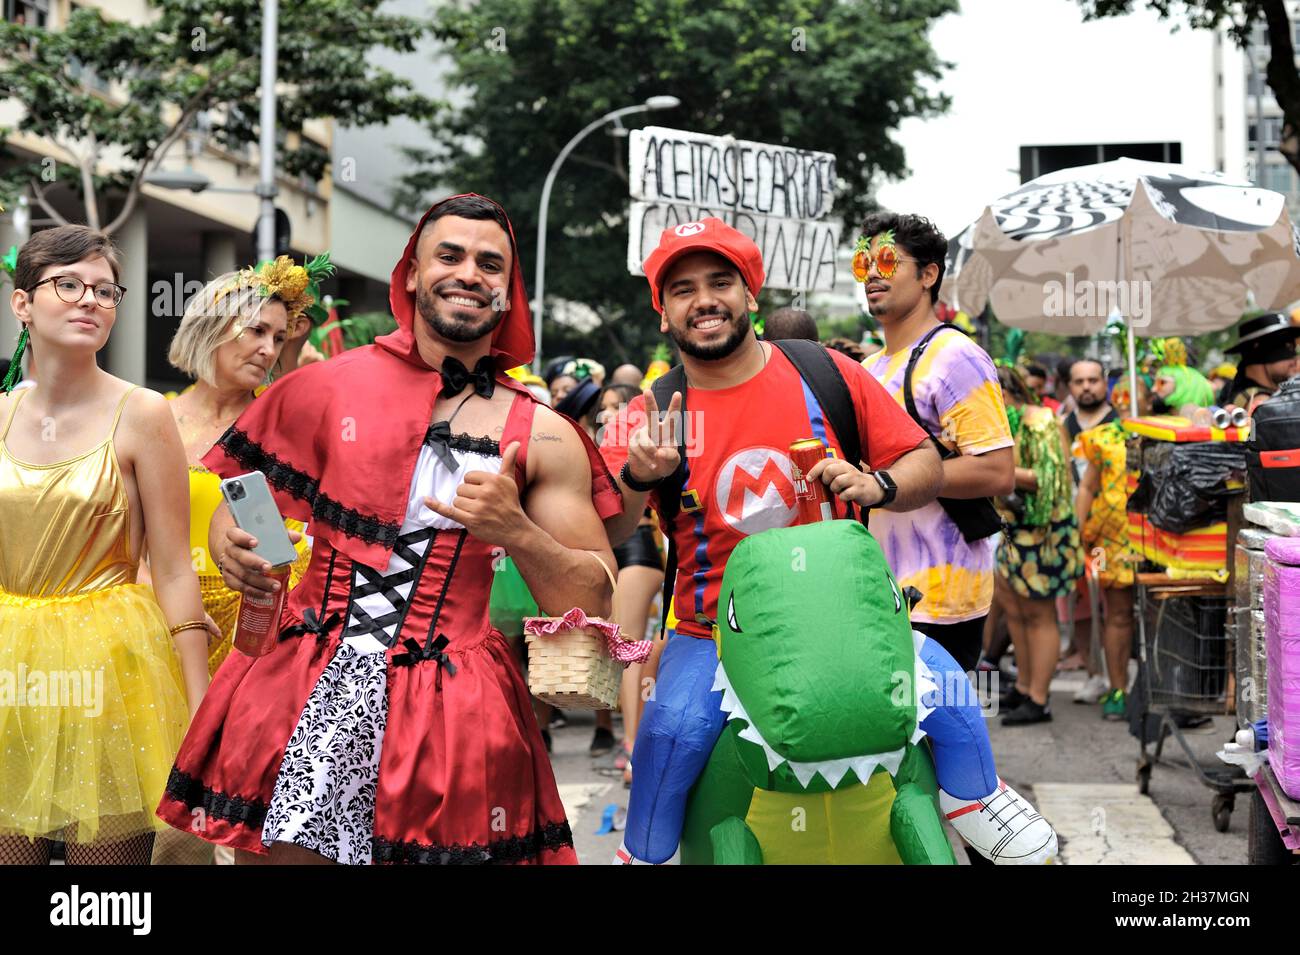 Brasile - 22 febbraio 2020: Rivelatori mascherati celebrano la vita all'ultimo carnevale di Rio de Janeiro tenuto prima del confinamento pandemico del coronavirus. Foto Stock